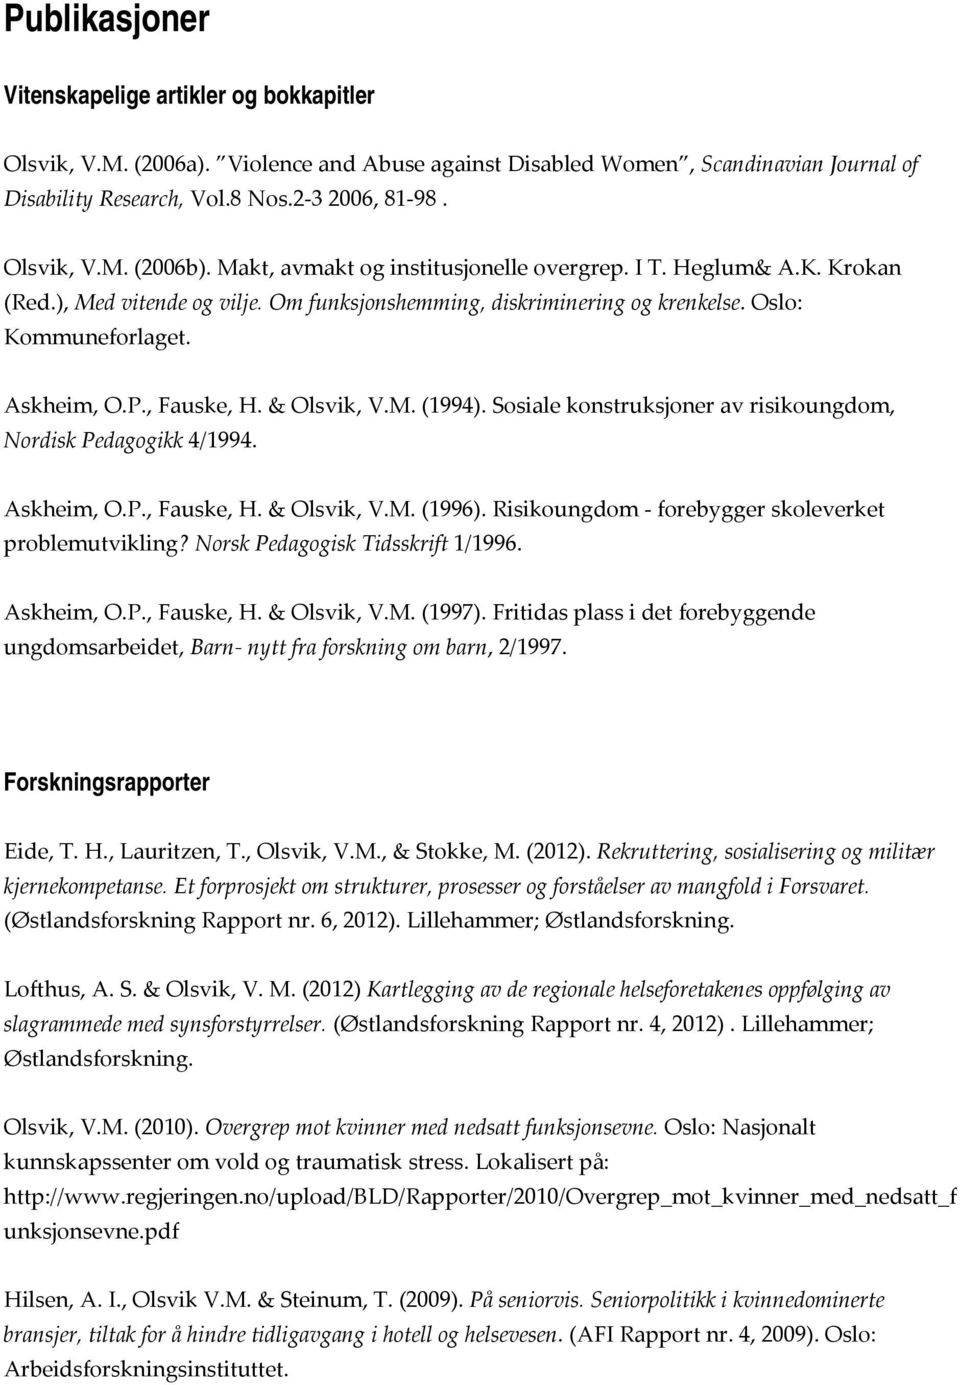 & Olsvik, V.M. (1994). Sosiale konstruksjoner av risikoungdom, Nordisk Pedagogikk 4/1994. Askheim, O.P., Fauske, H. & Olsvik, V.M. (1996). Risikoungdom forebygger skoleverket problemutvikling?